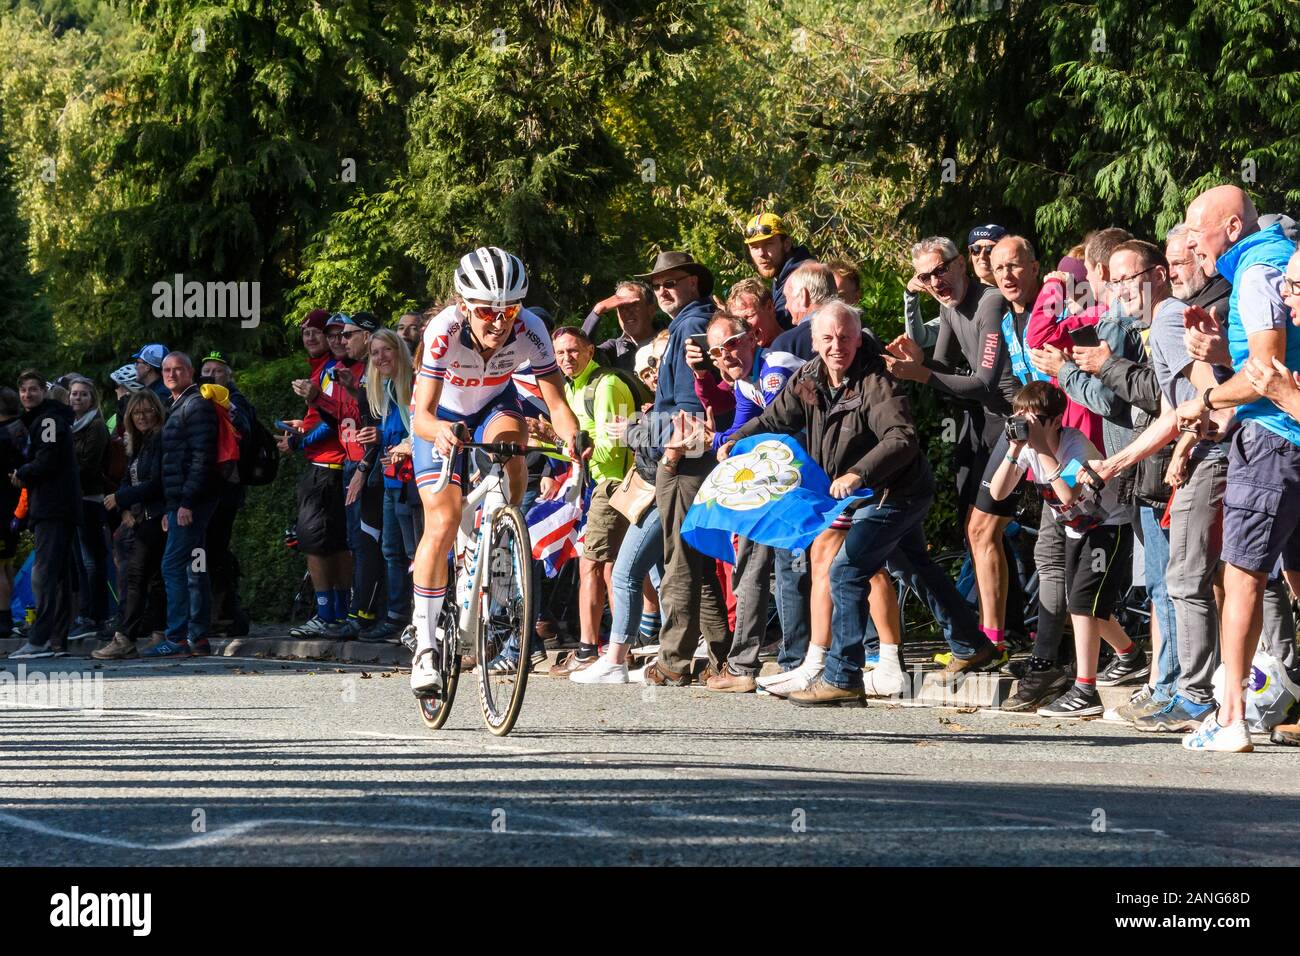 Lizzie Deignan, road cyclist riding bike, en compétition dans la course à vélo, acclamé par la foule de partisans - Championnats du Monde UCI, Harrogate, FR, UK. Banque D'Images